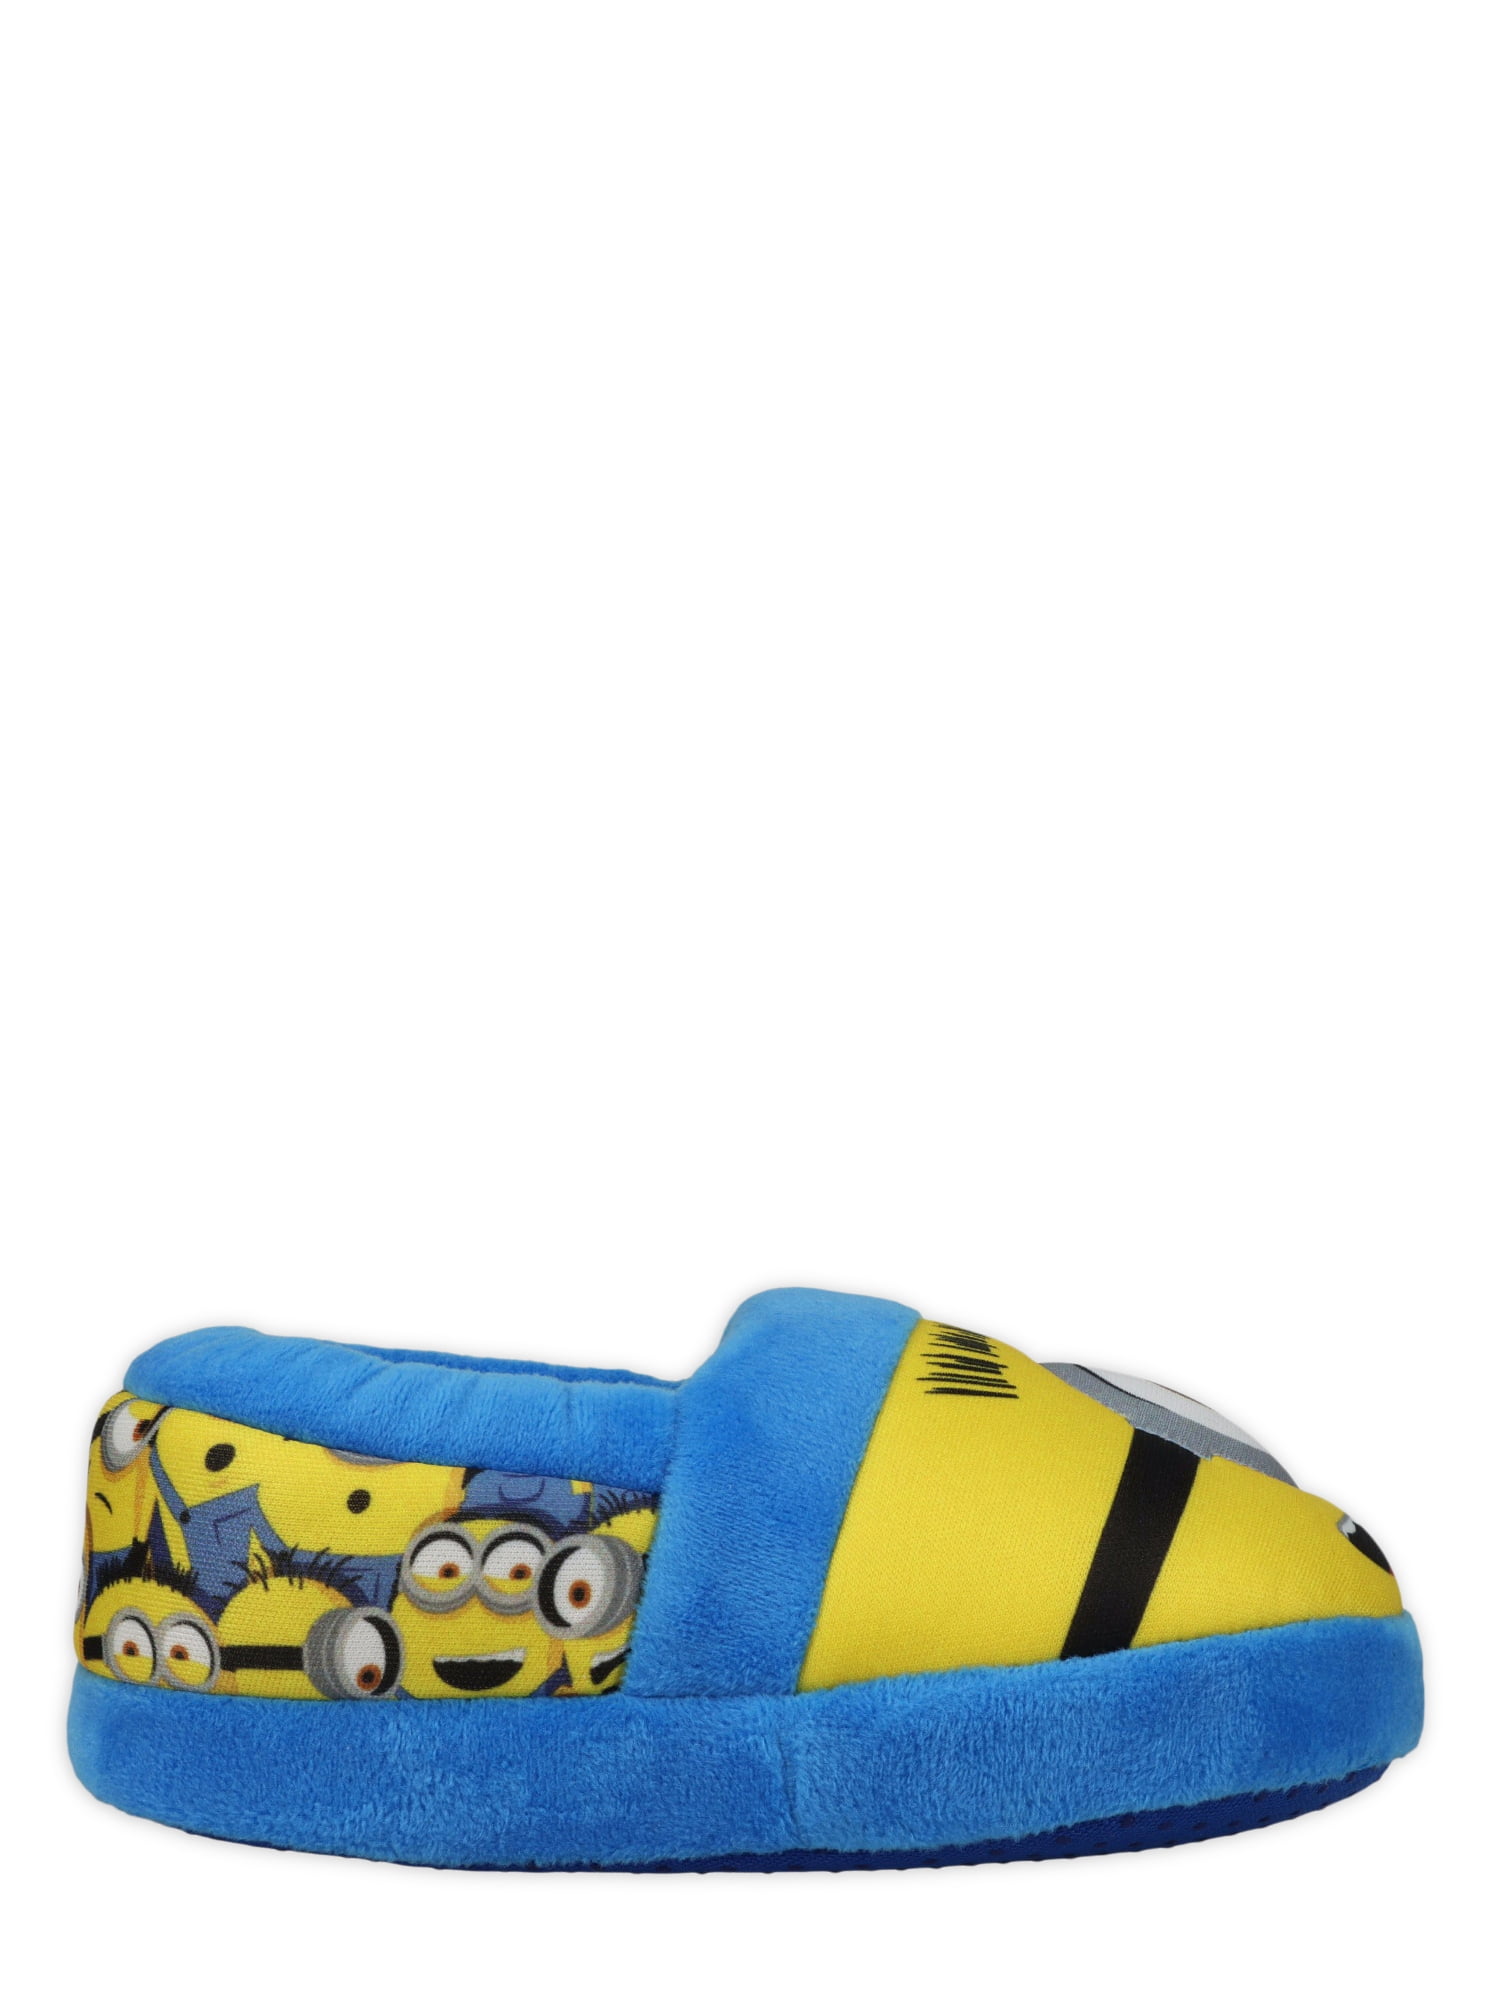 minion slippers walmart